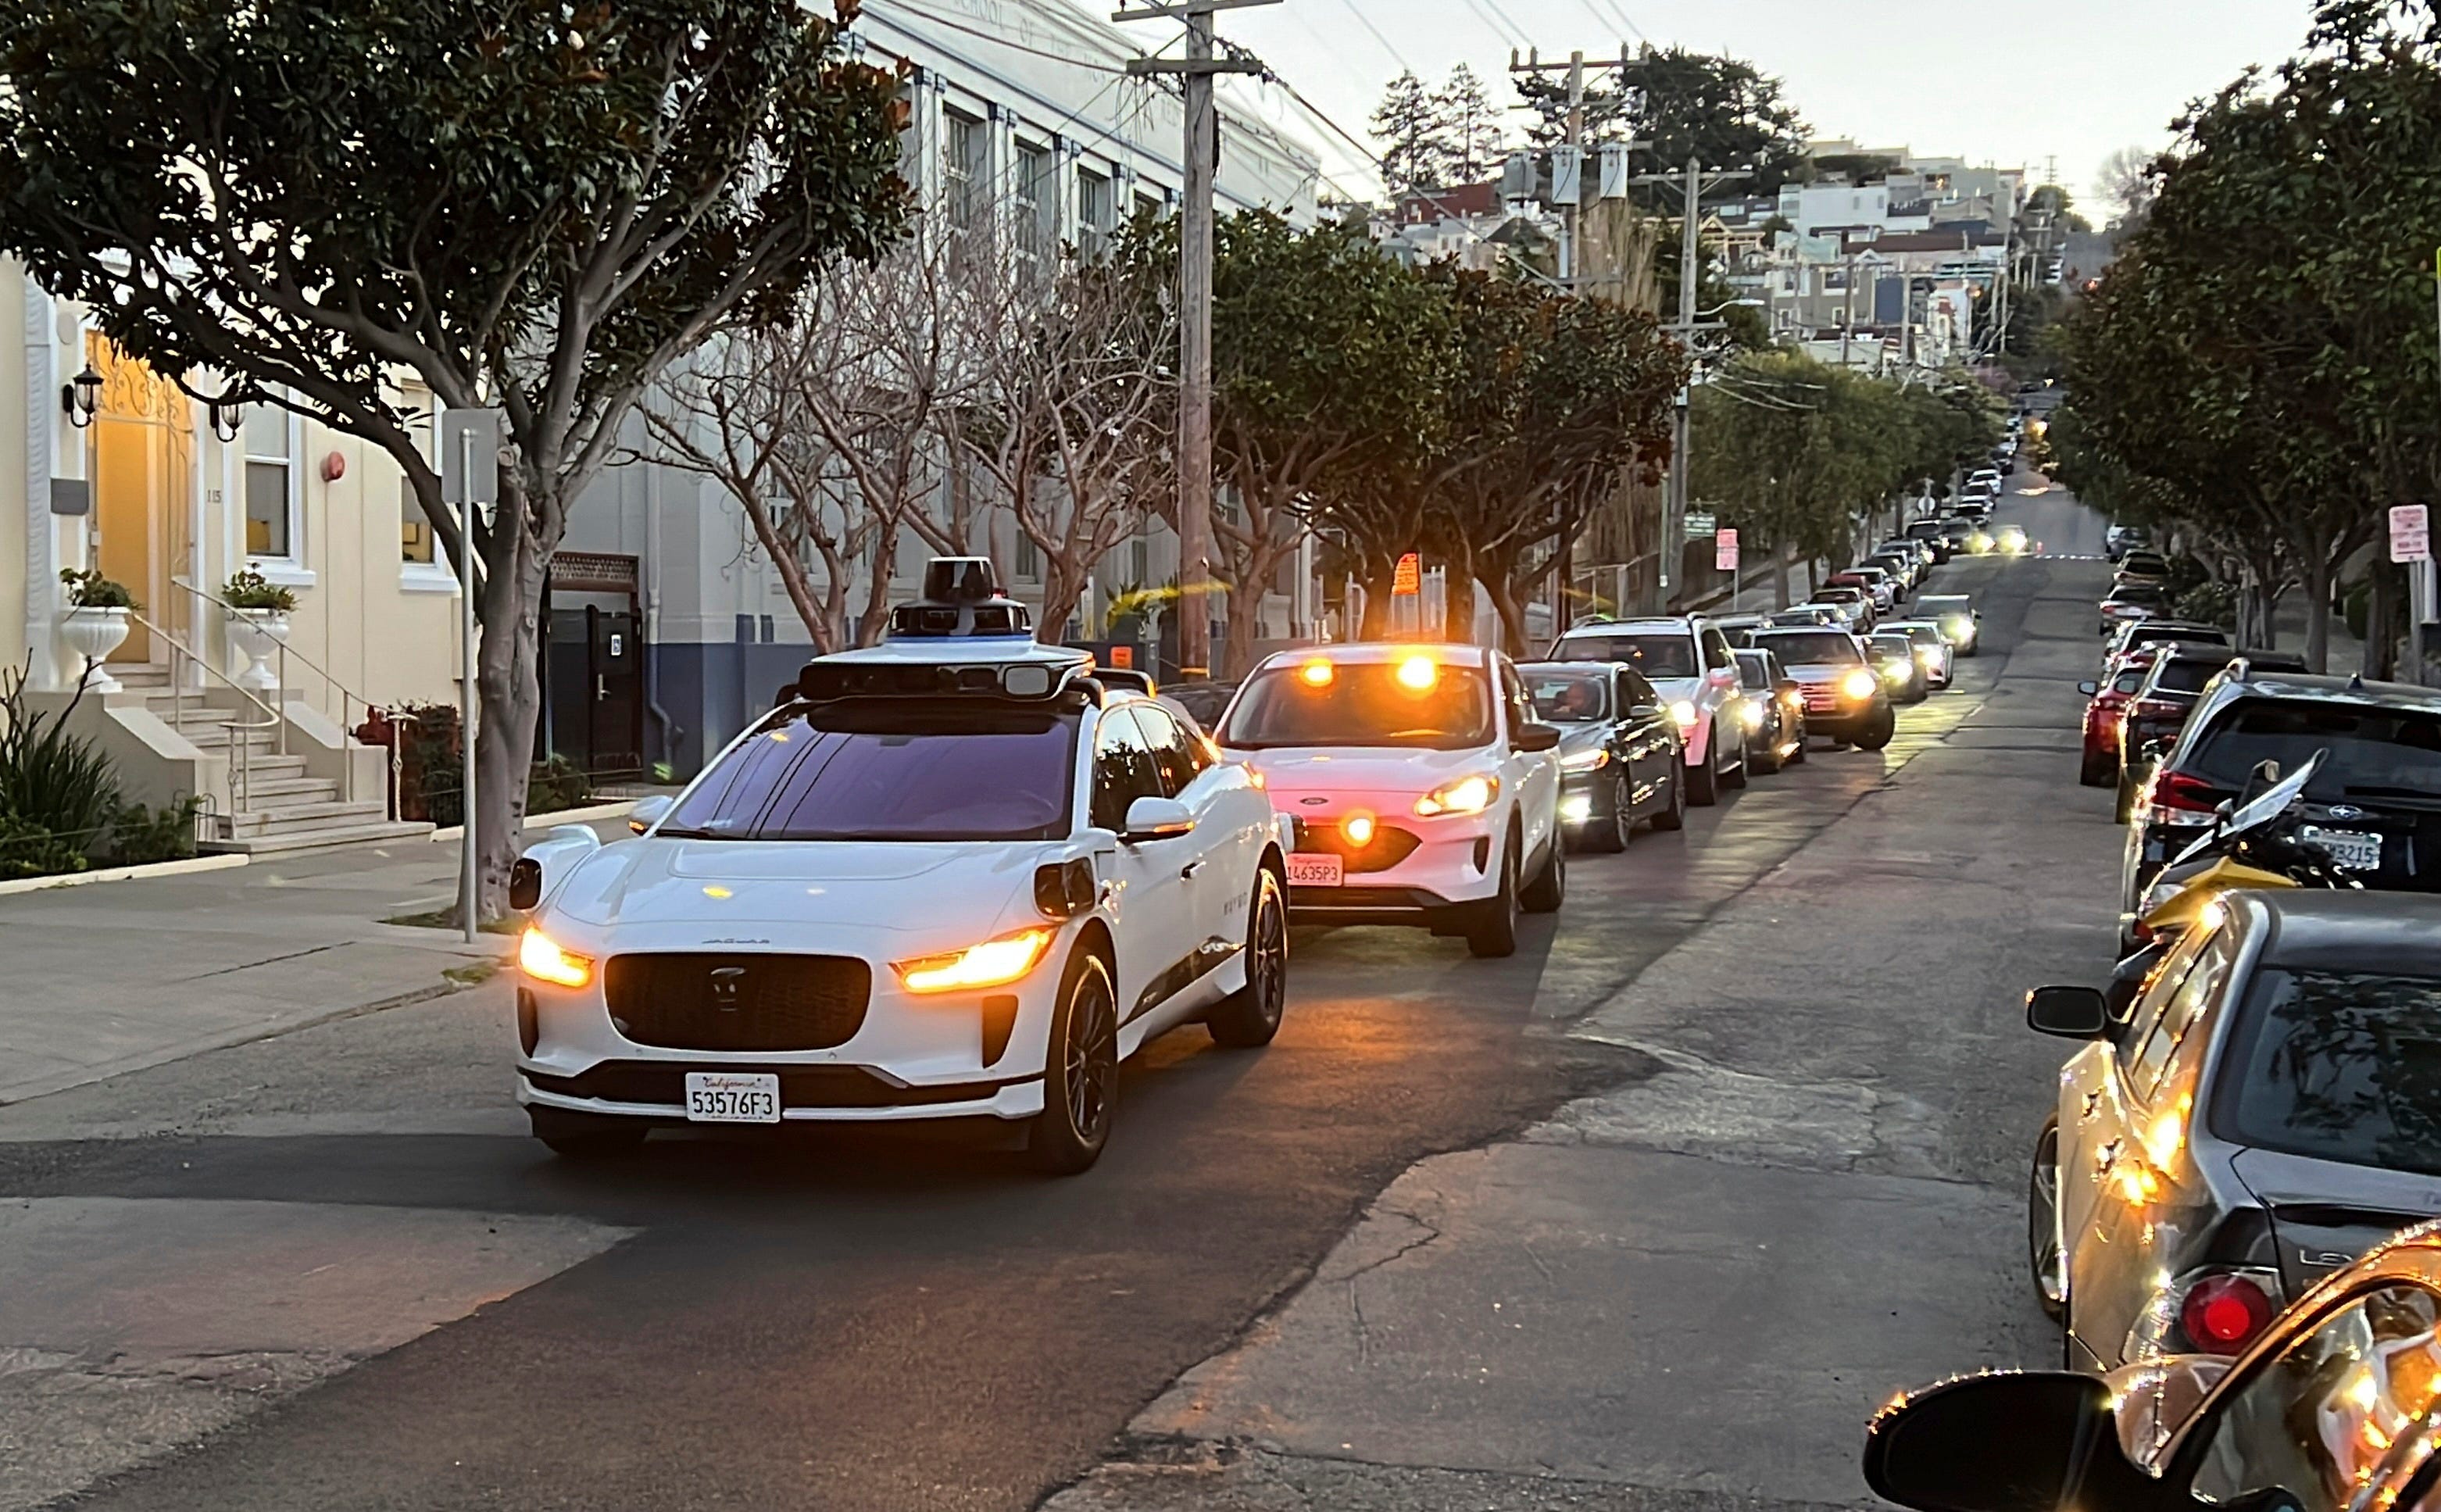 белая машина блокирует очередь машин, ожидающих за ней на городской улице. Это беспилотное такси Waymo.